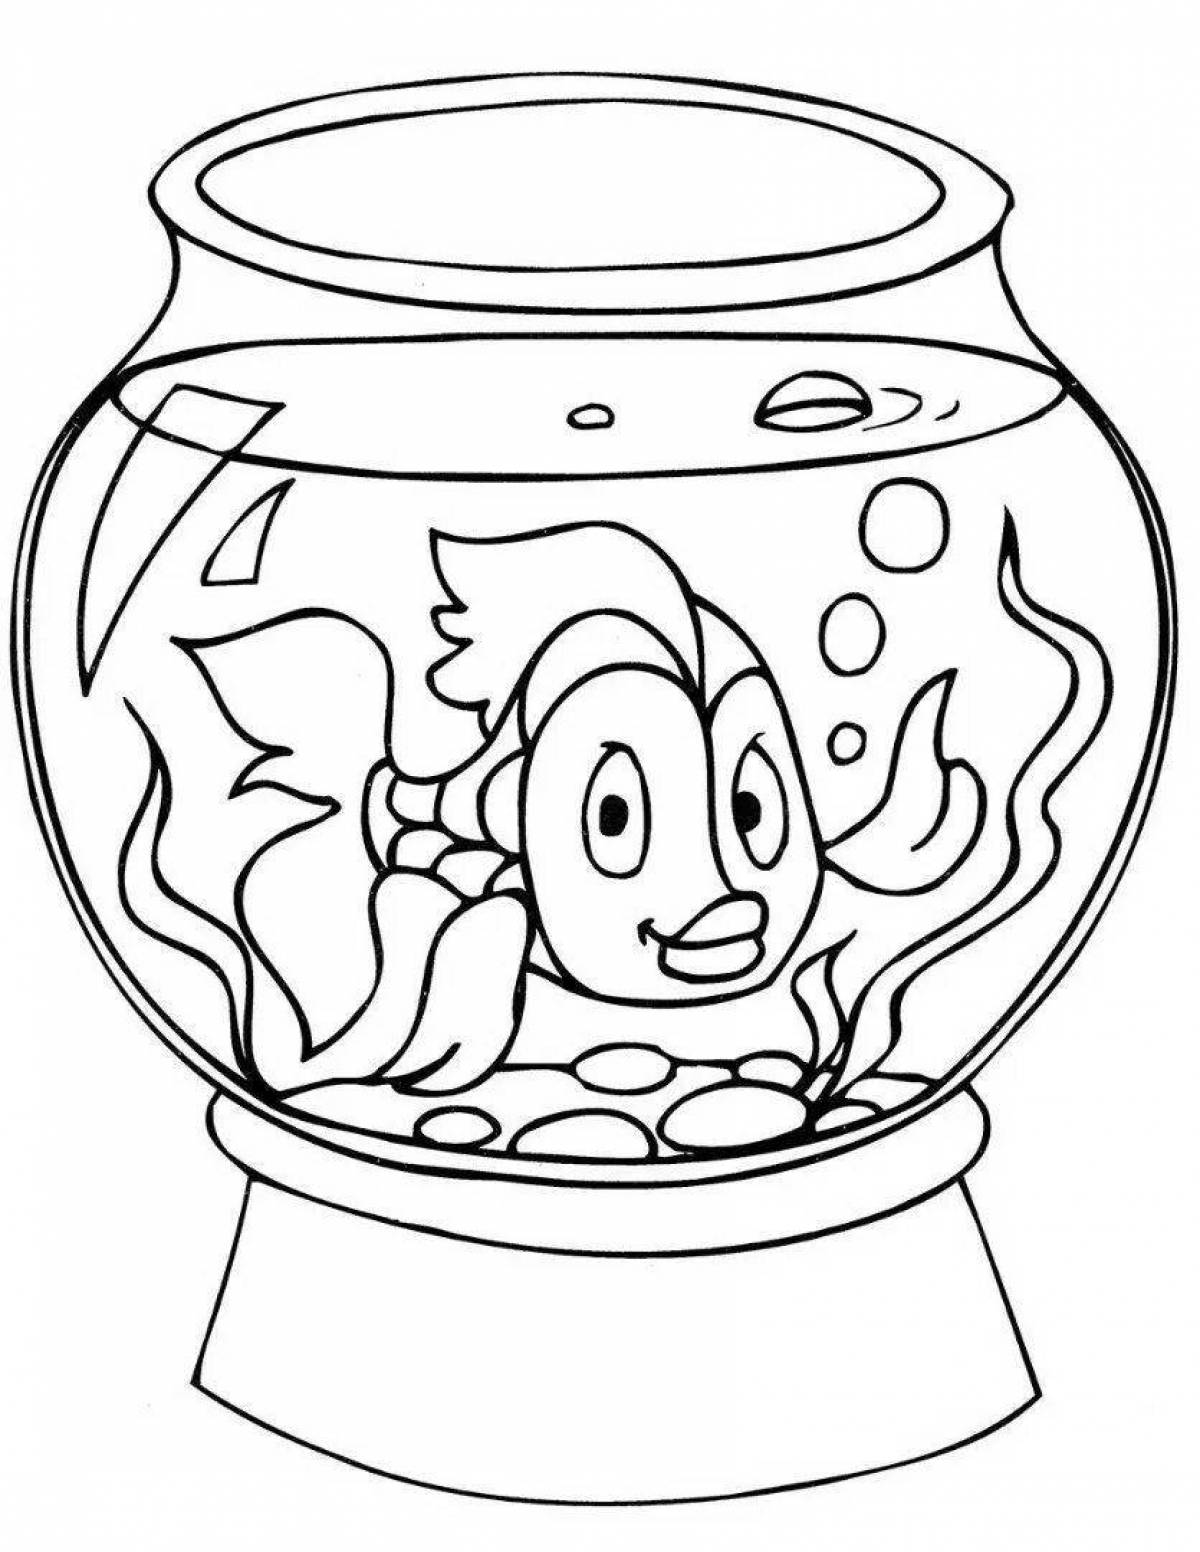 Привлекательная аквариумная рыбка-раскраска для детей 5-6 лет